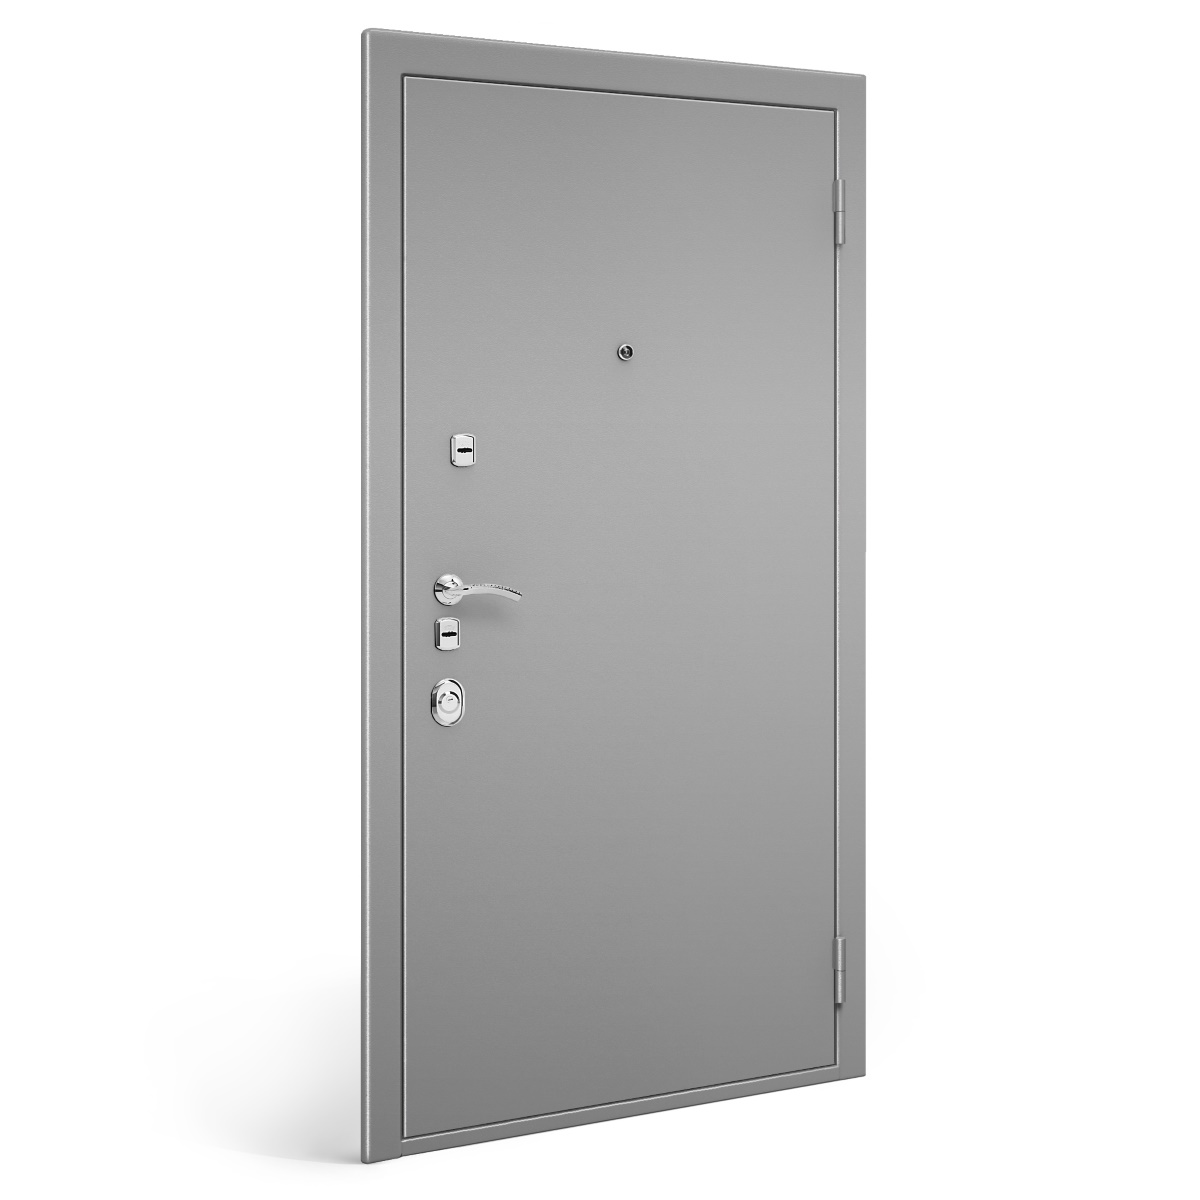 Купить металлические двери в гомеле. Входная дверь БП - 3 NX 2 (White Ash). Дверной блок стальной 5735/3. Дверь металлическая серая Эльбор. Дверной блок входной металлический.